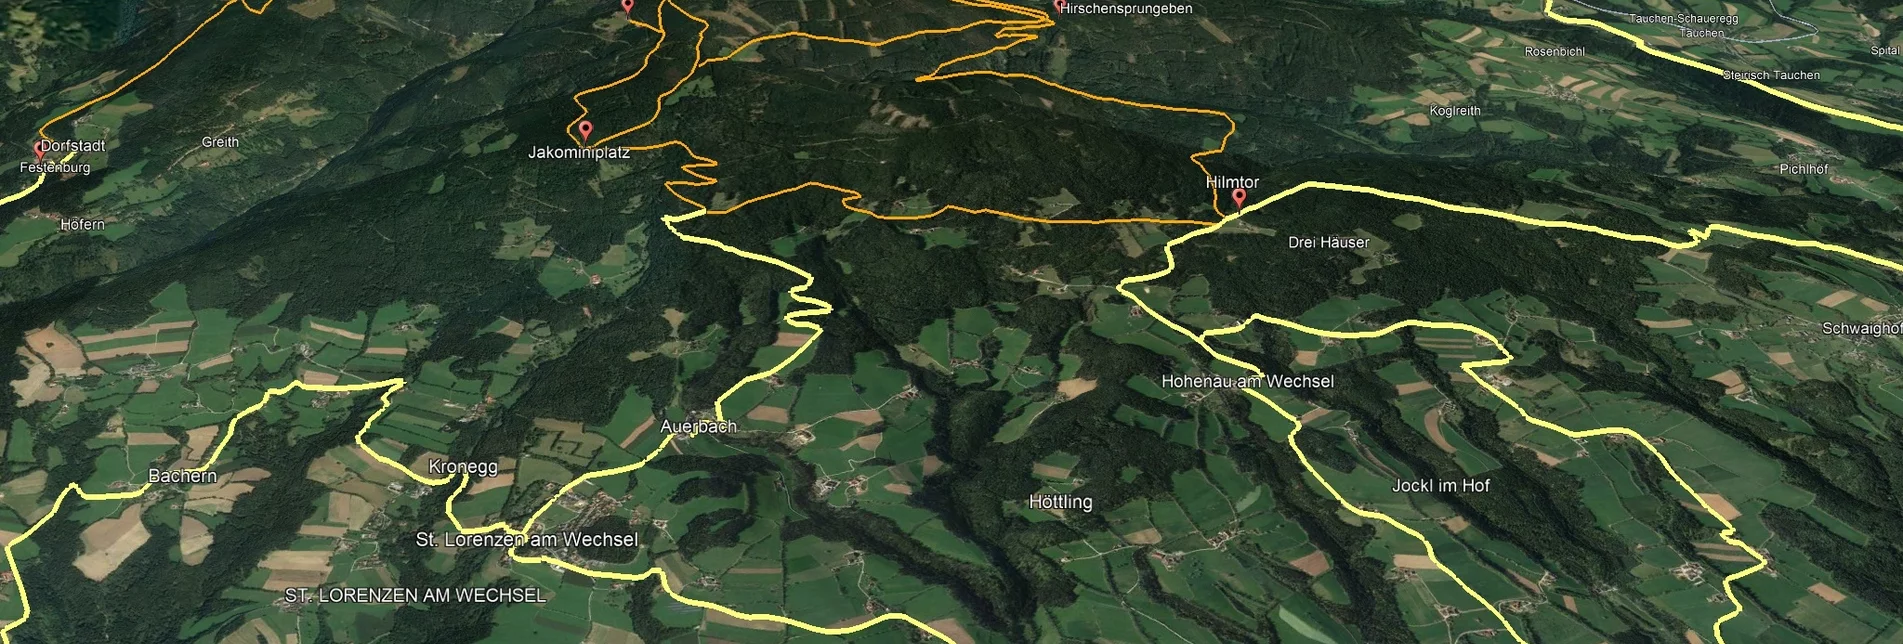 Mountain Biking PREVIEW Styrian Wexl Trails - Hirschsprungeben Route - Touren-Impression #1 | © Verein Tourismusentwicklung Steirischer Wechsel